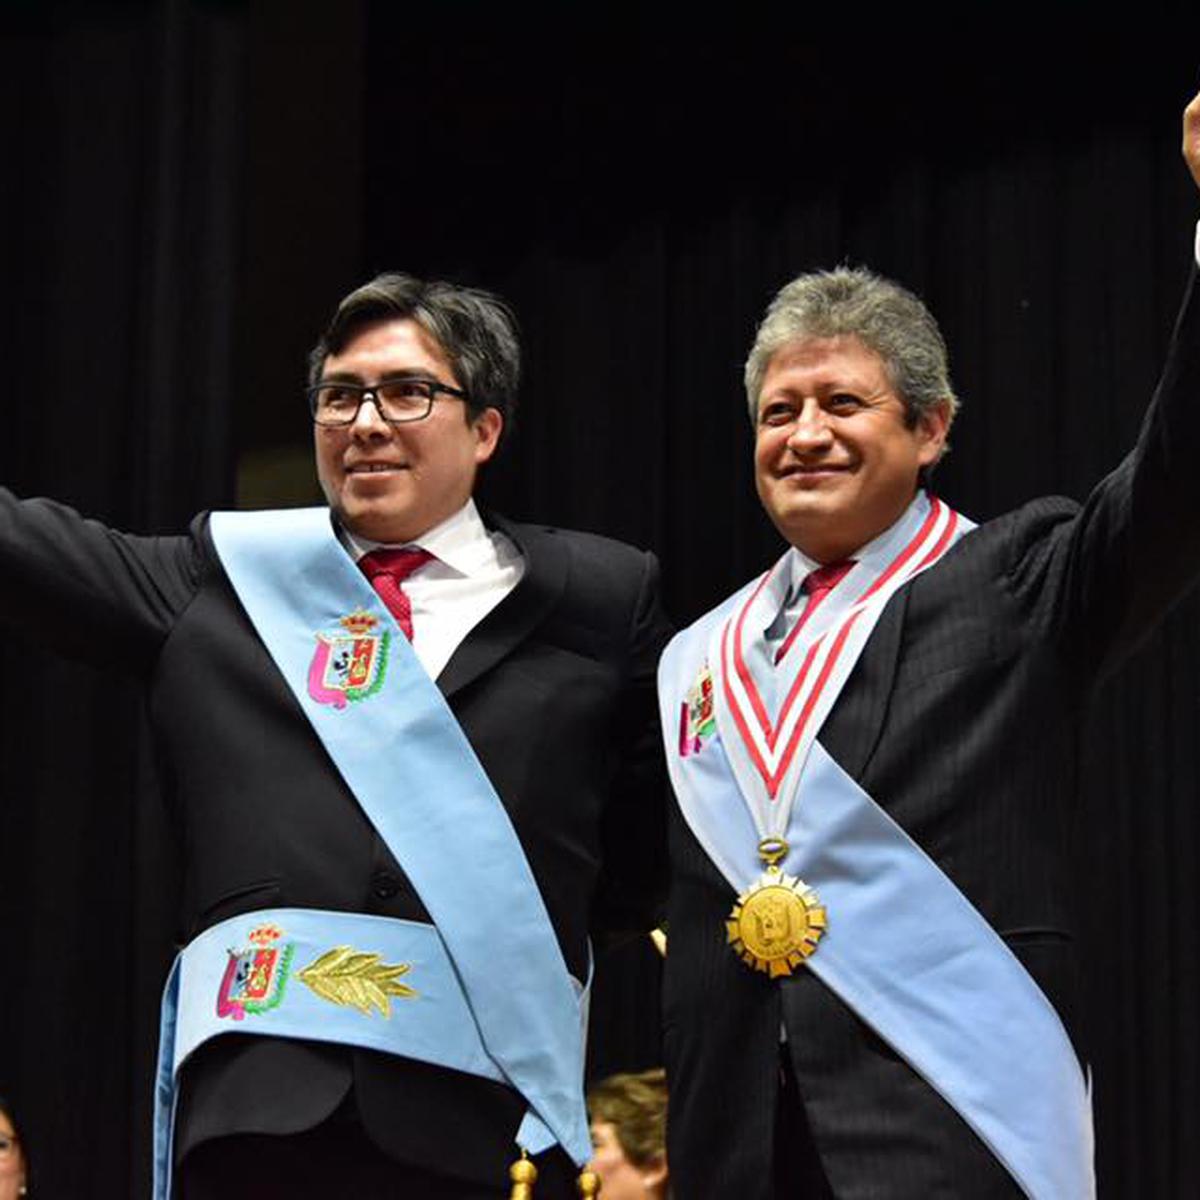 Trabajadores municipales con más de 35 años de servicio, reciben merecido  reconocimiento por el alcalde Henry Alcántara - Noticias - Municipalidad  Provincial de Cajamarca - Plataforma del Estado Peruano